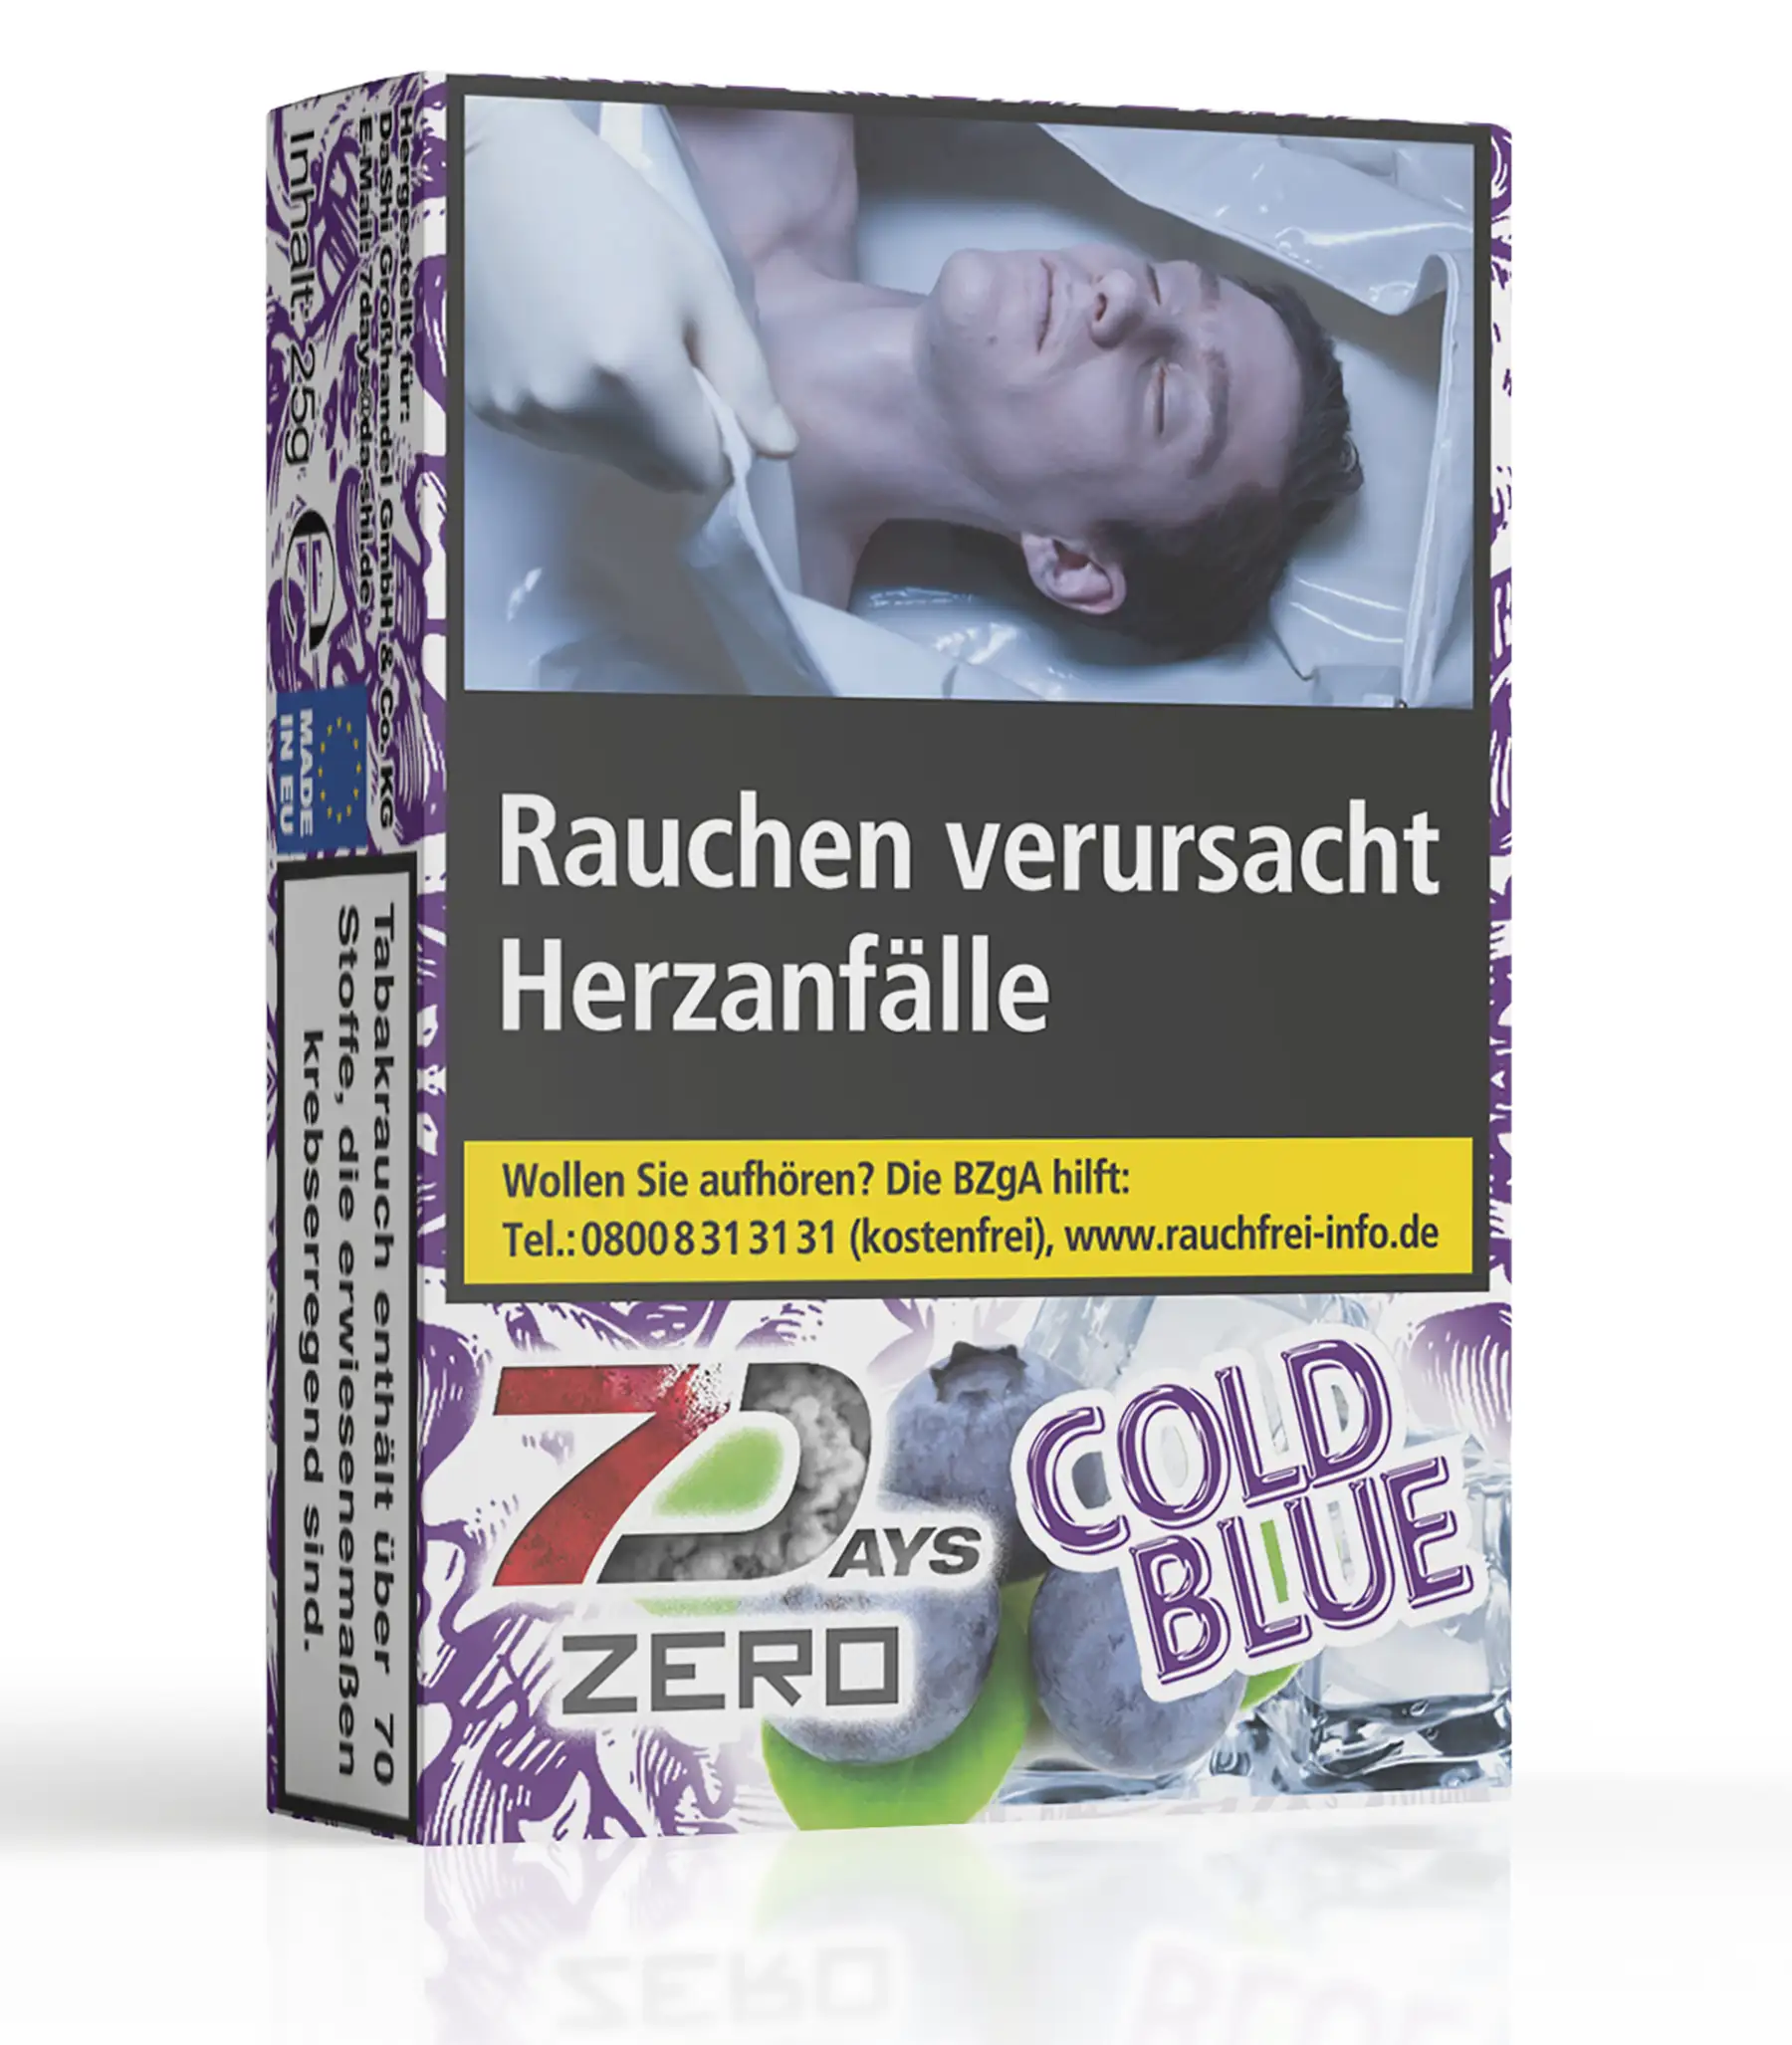 7Days Zero Tabakersatz Cold Blue 25g